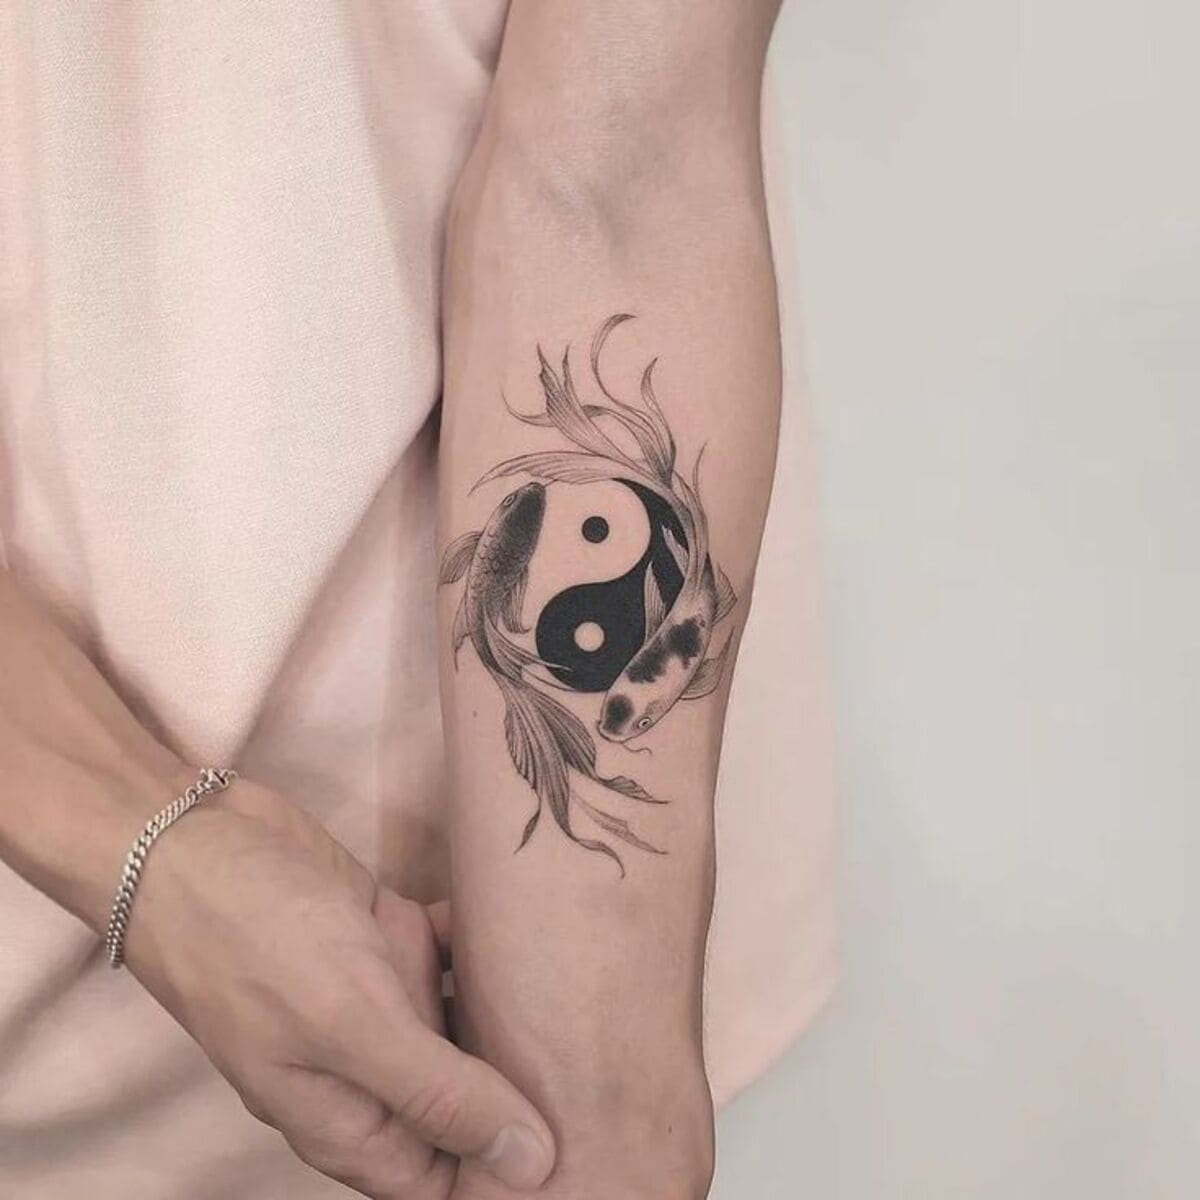 tatuagem-de-yin-yang